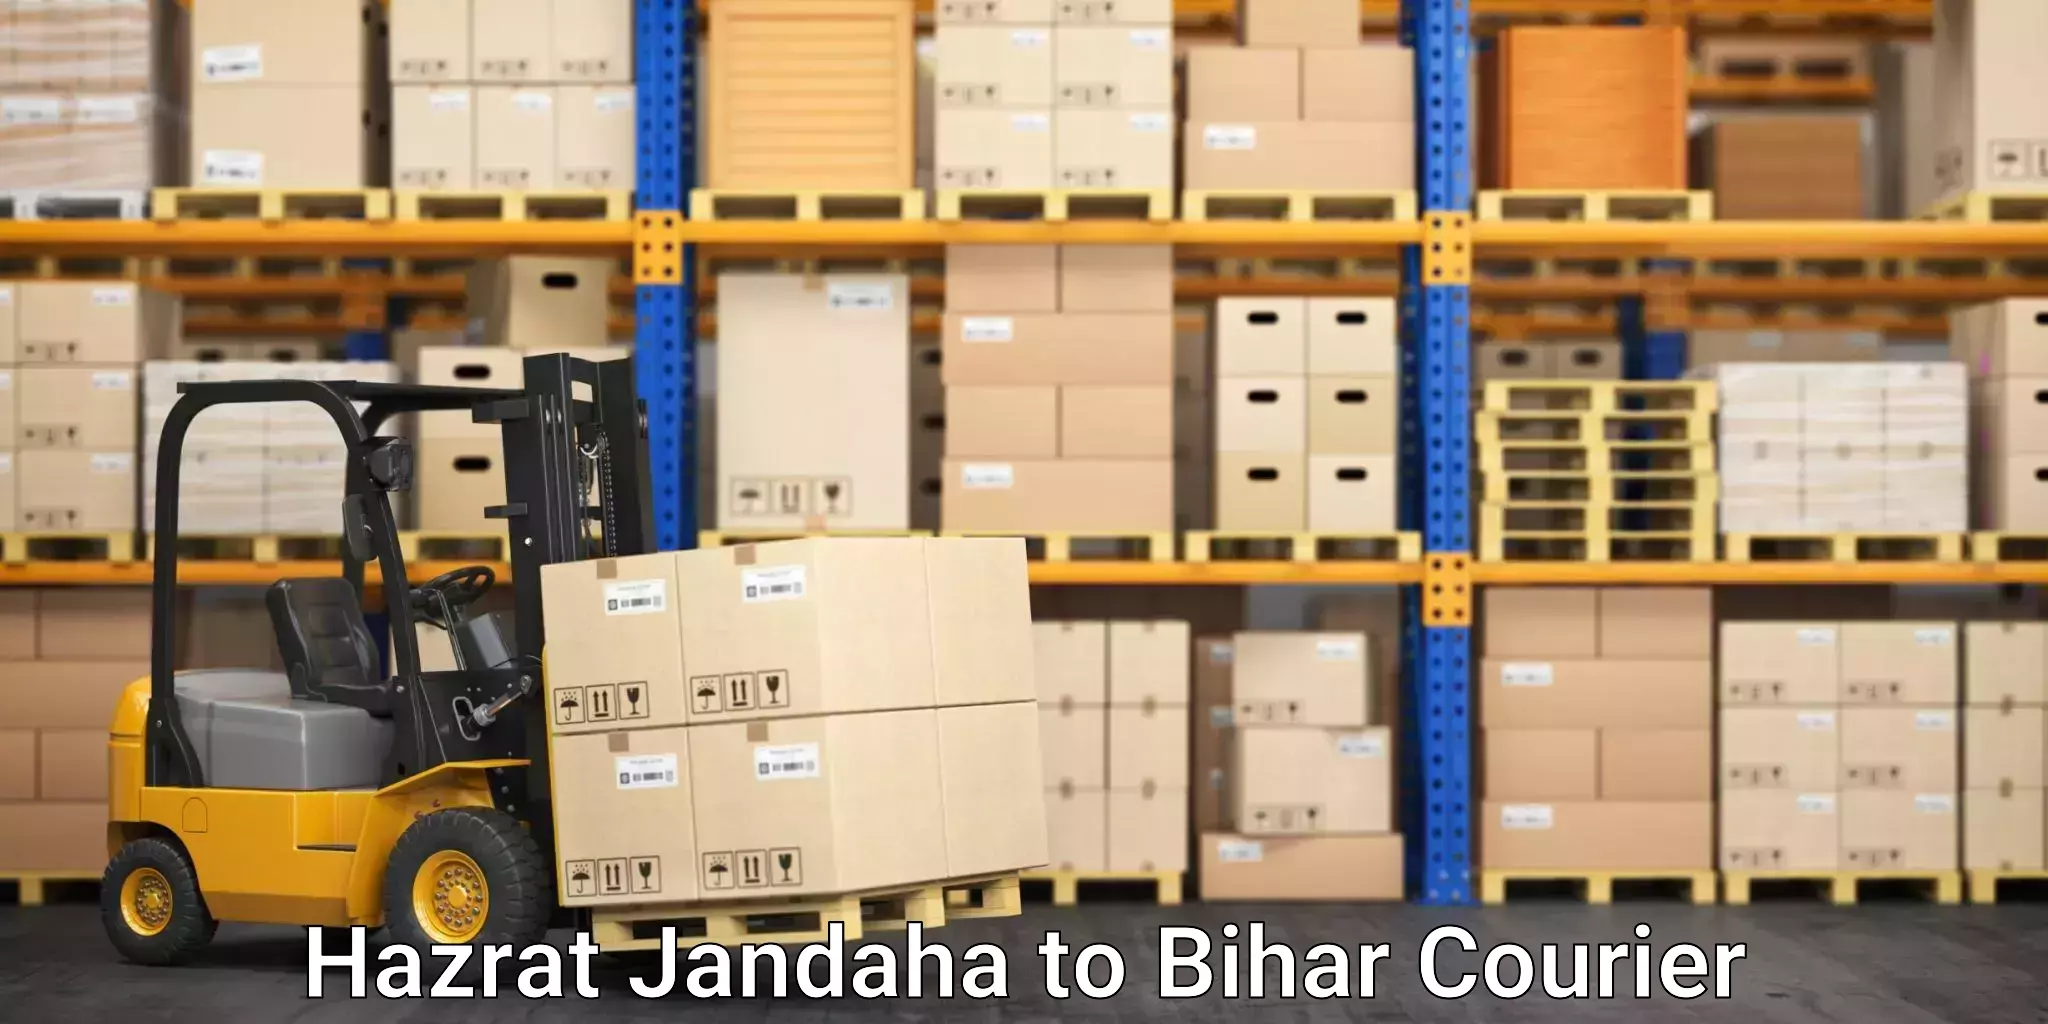 Personalized moving and storage Hazrat Jandaha to Muzaffarpur